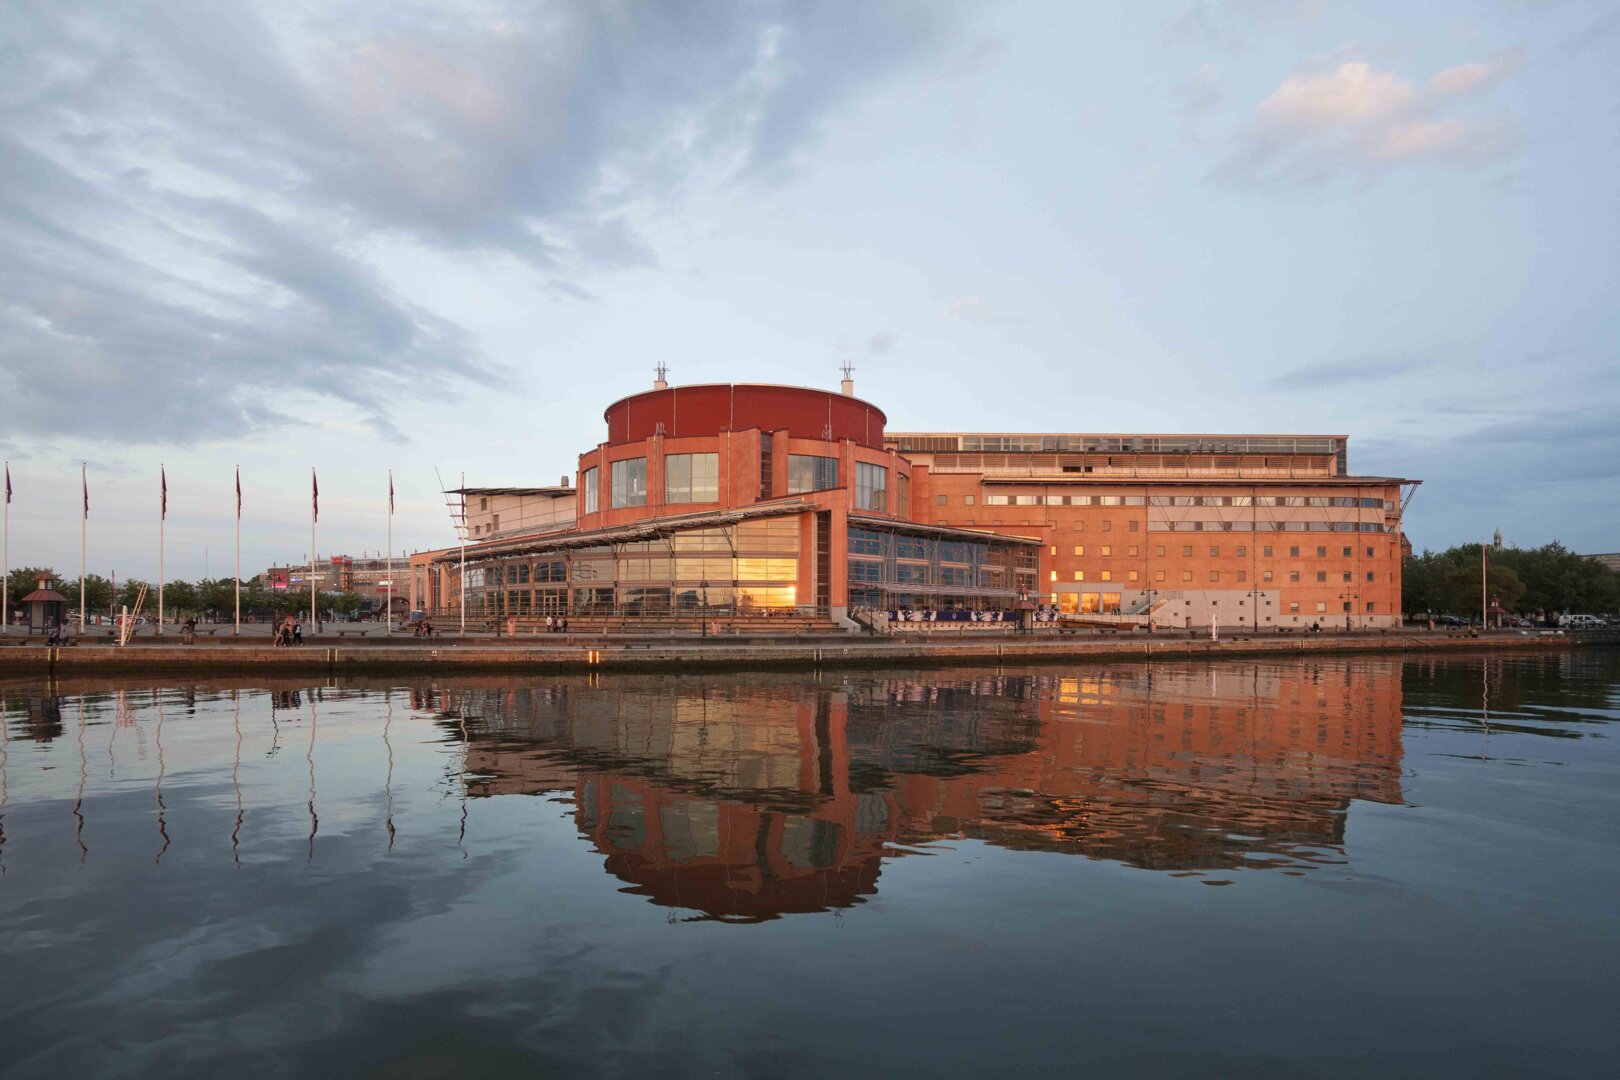 GöteborgsOperan en sommarkväll. Byggnaden är i rött tegel och med stora glaspartier. Framför byggnaden finns en brygga och därfter kommer Göta Älv.